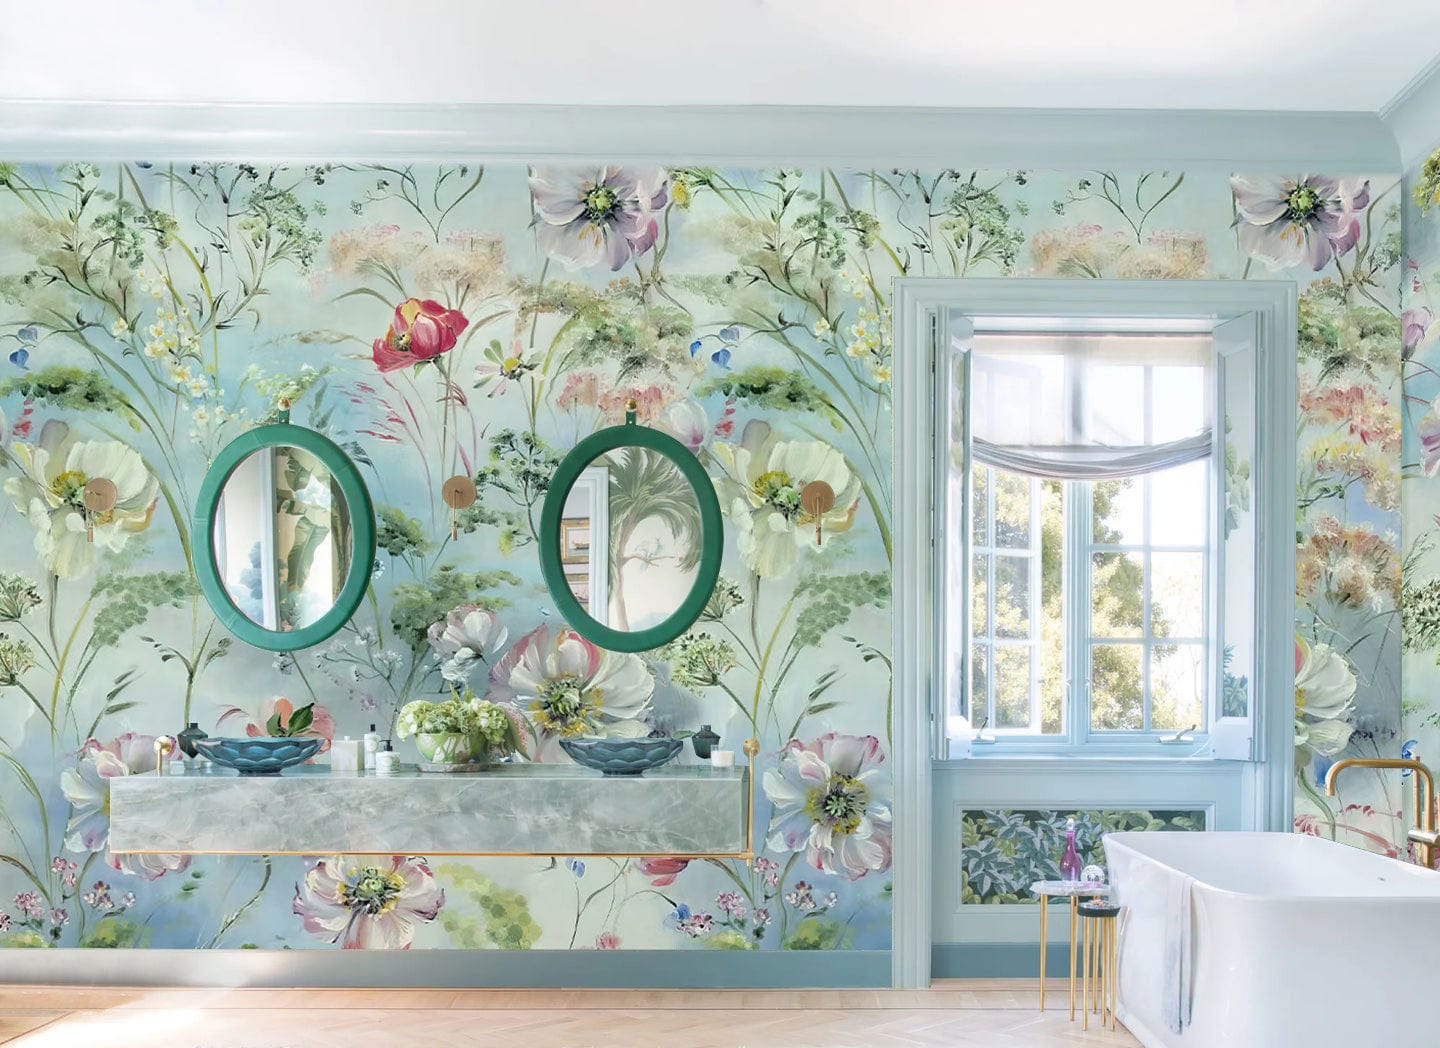 wild garden wallpaper mural bathroom decor